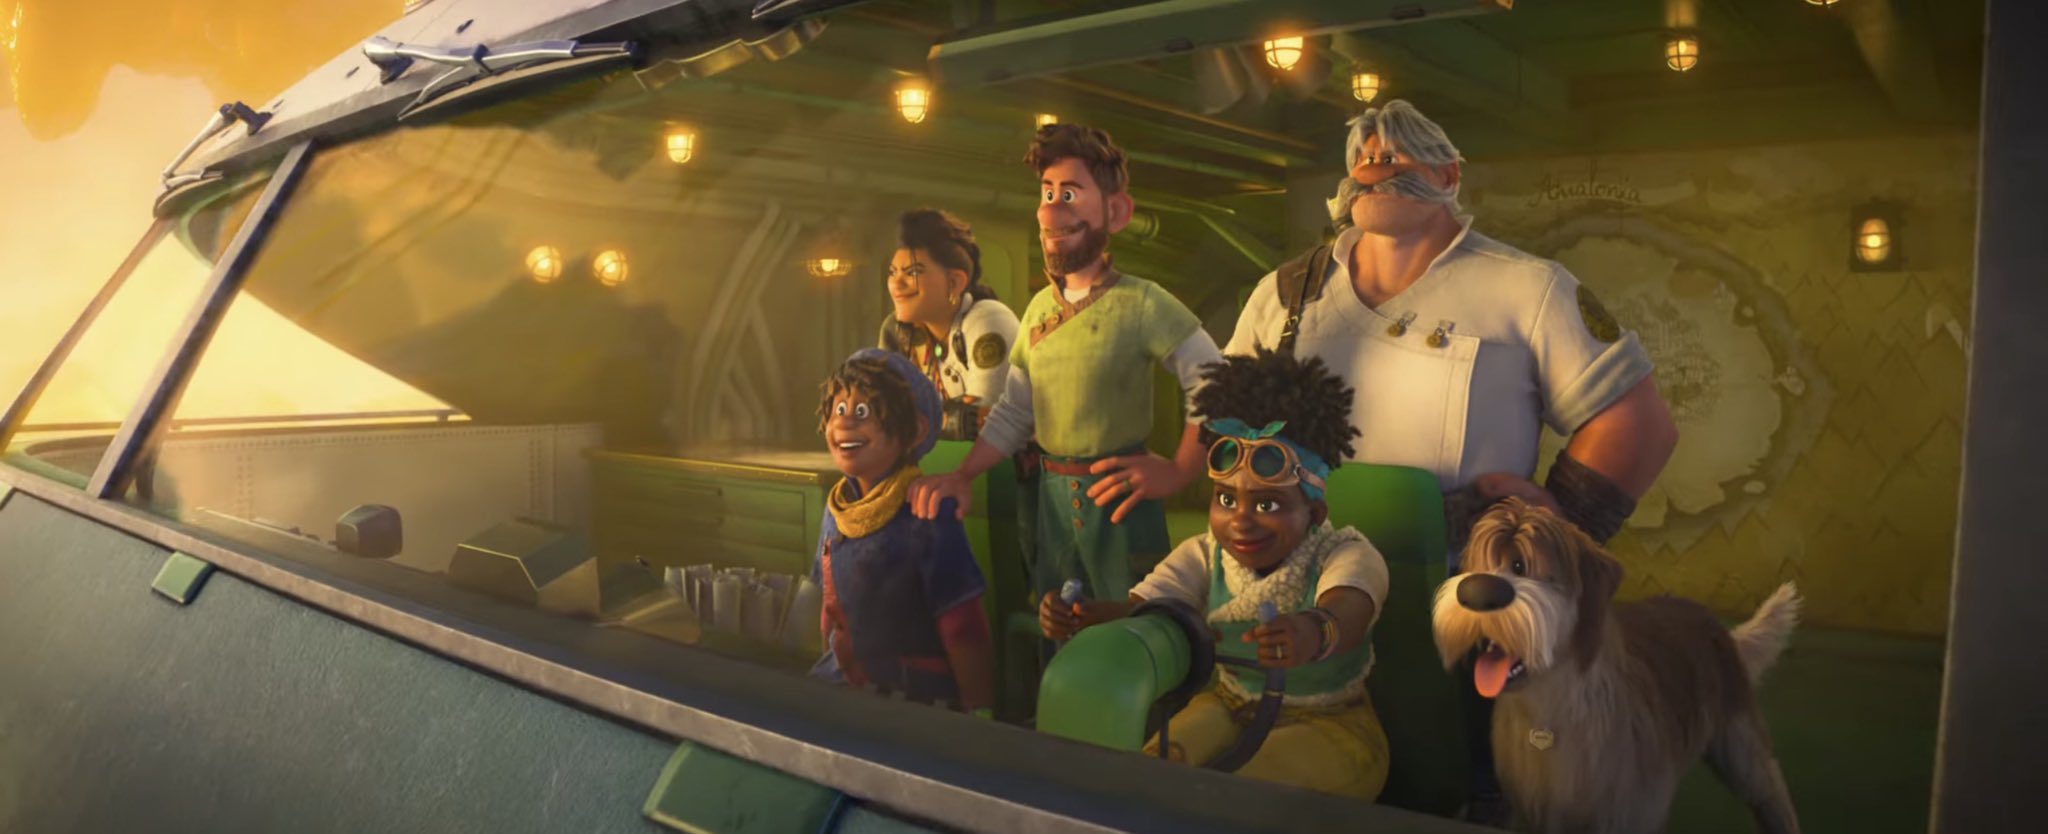 Walt-Disney-Animation-Studios-has-released-the-trailer-for-Strange-World.jpg